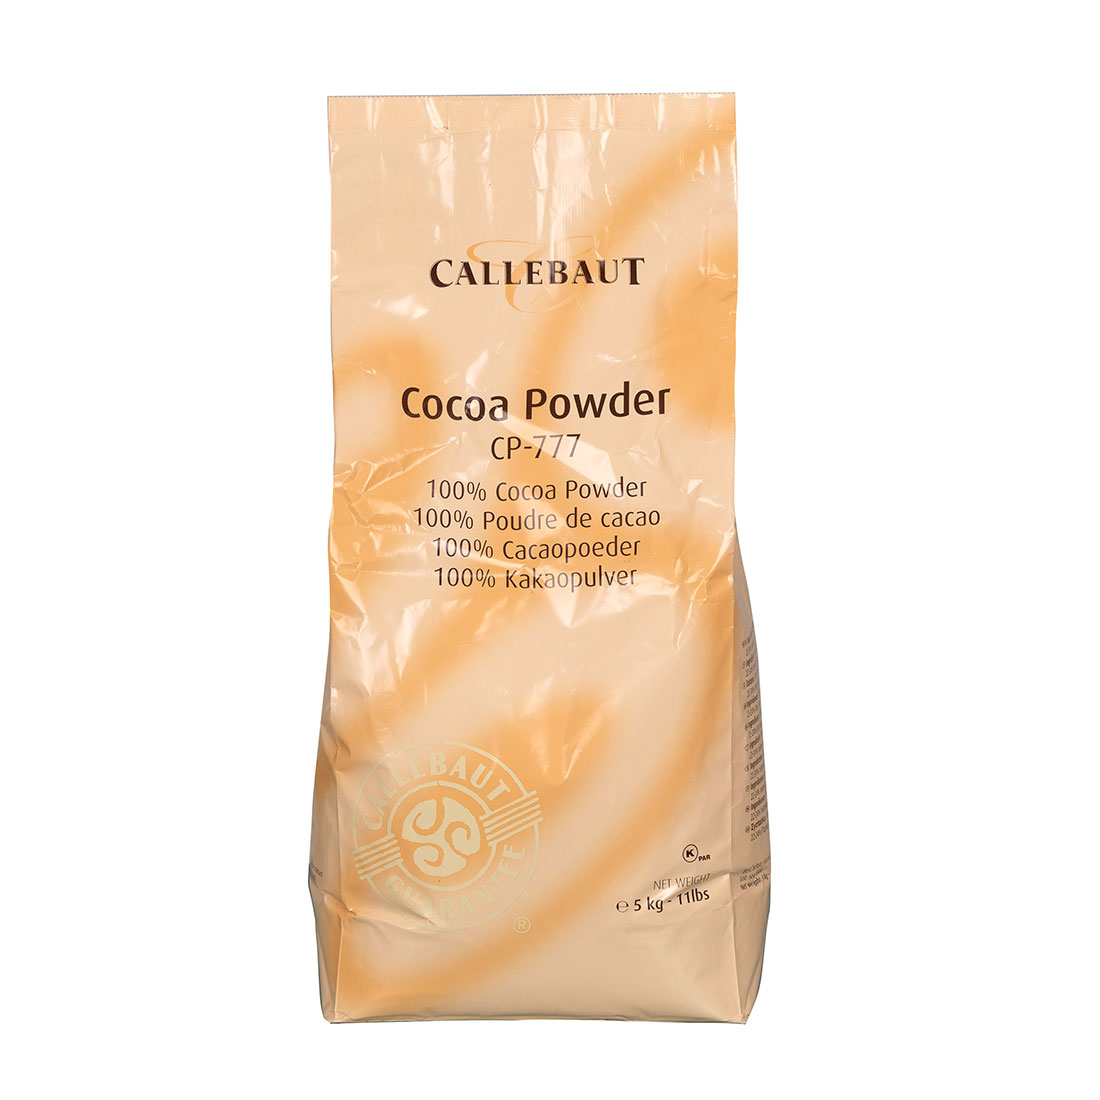 Callebaut cacaopoeder in kopen? Bas Boer Noten